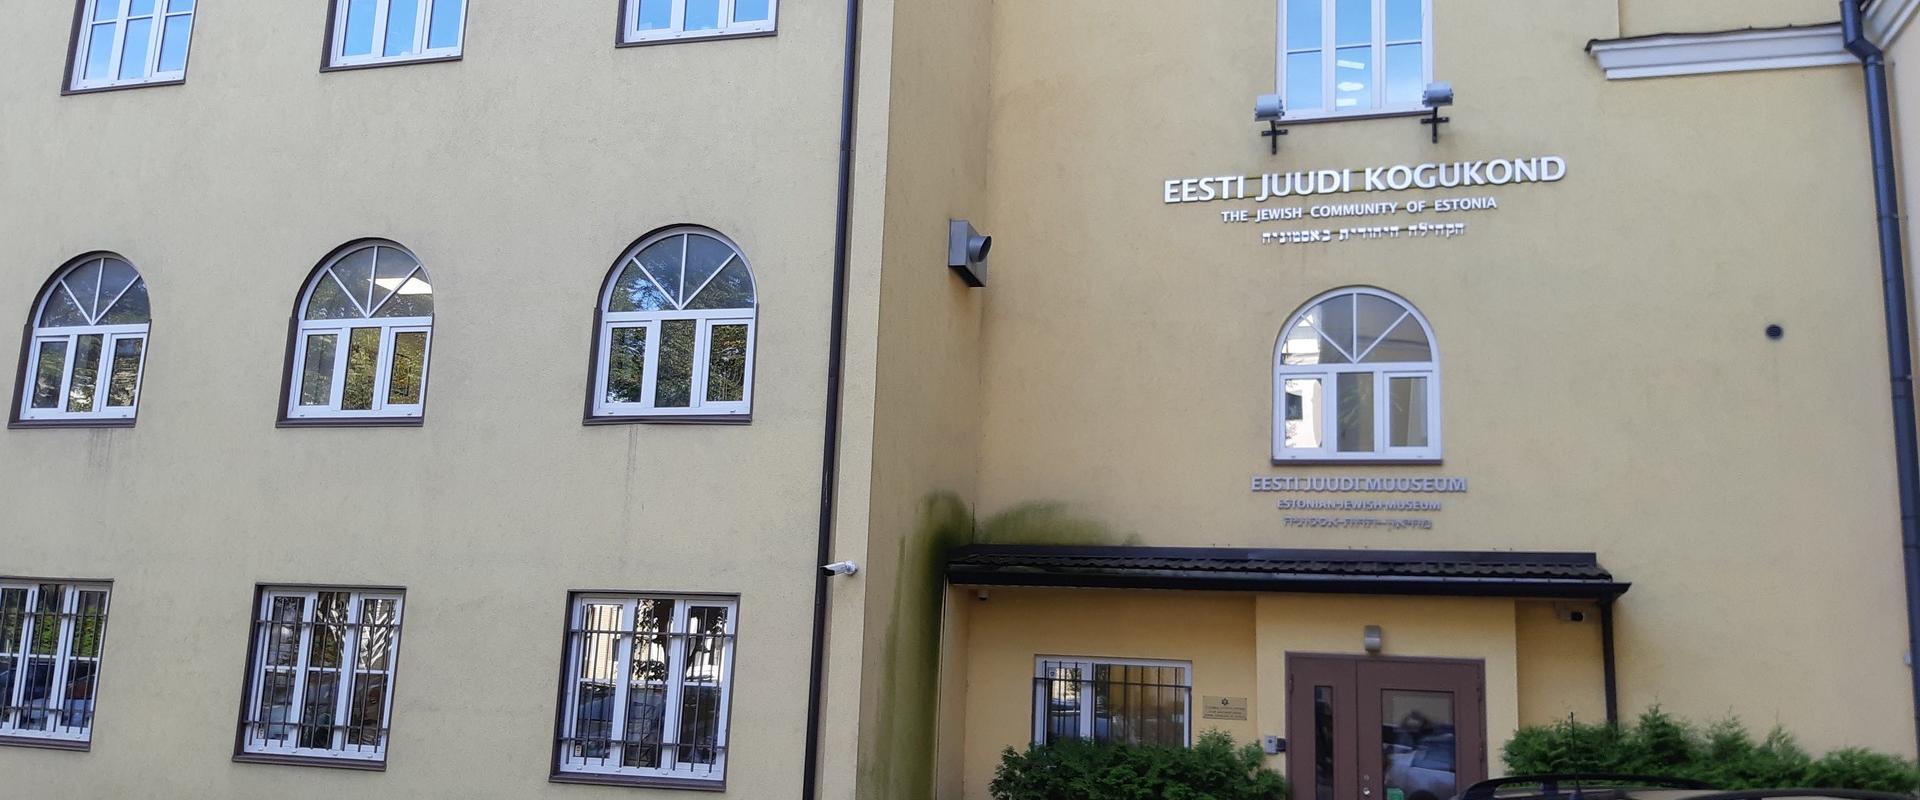 Eesti Juudi Muuseum